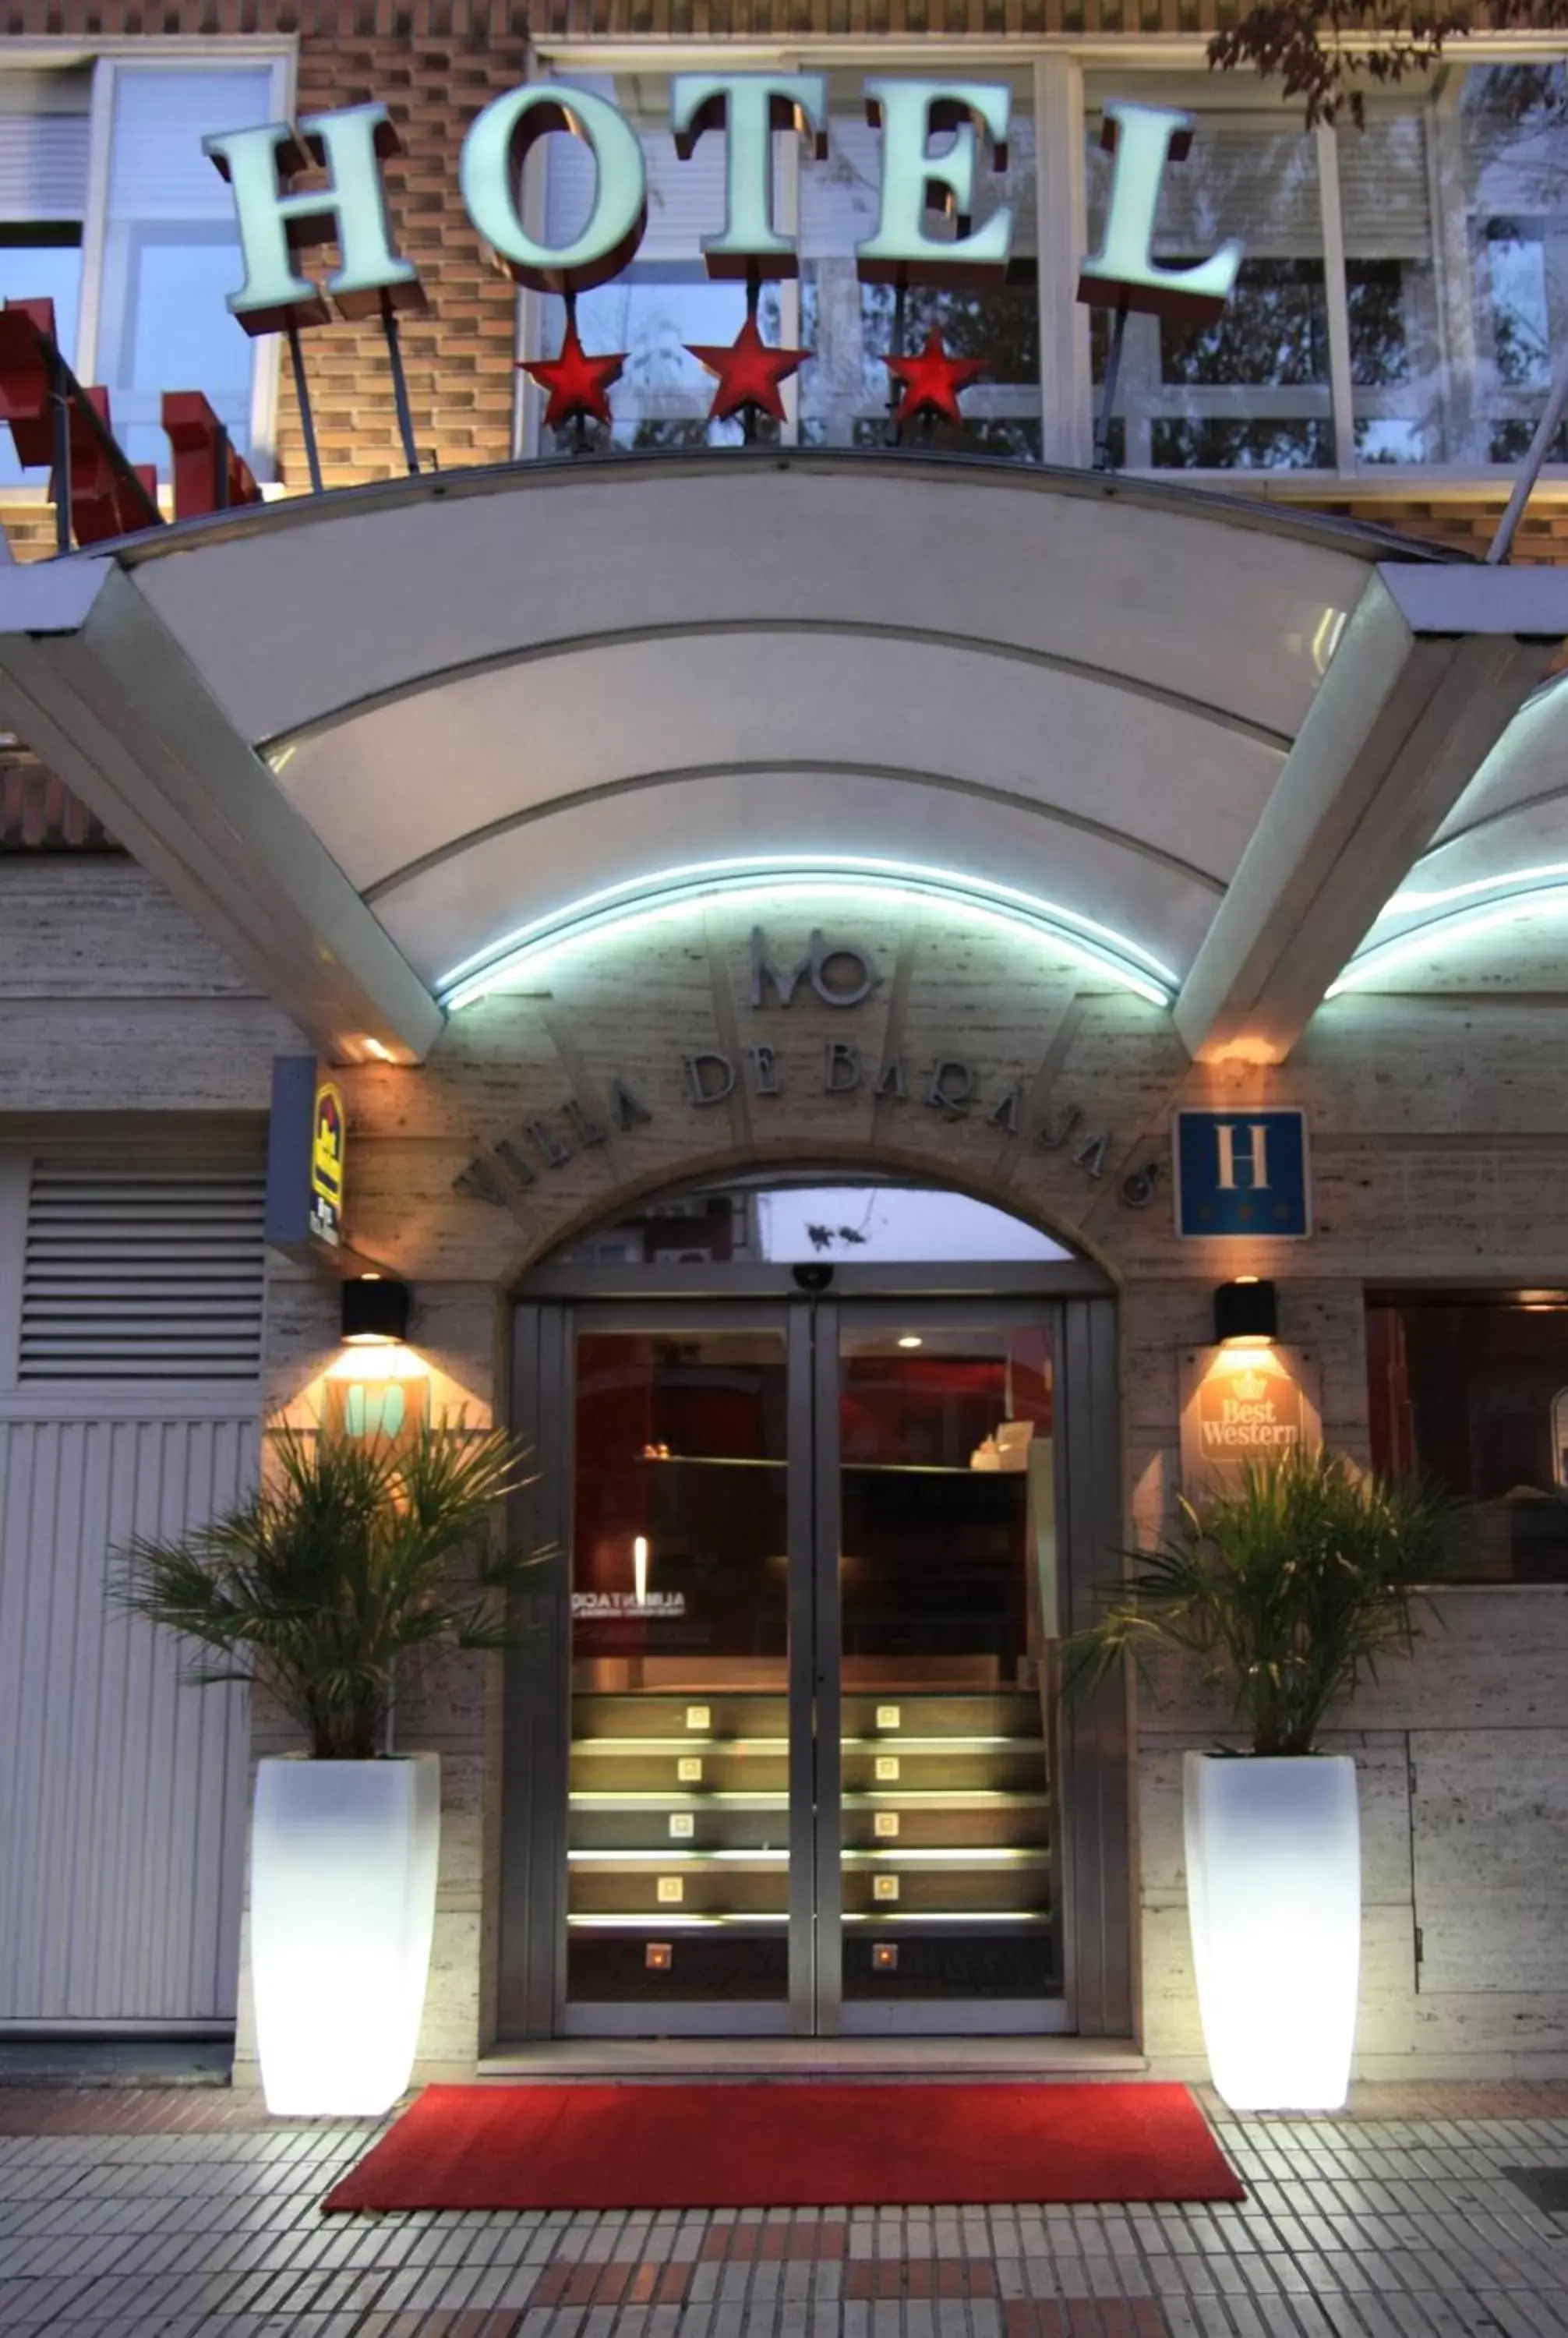 Facade/entrance in Hotel Villa de Barajas